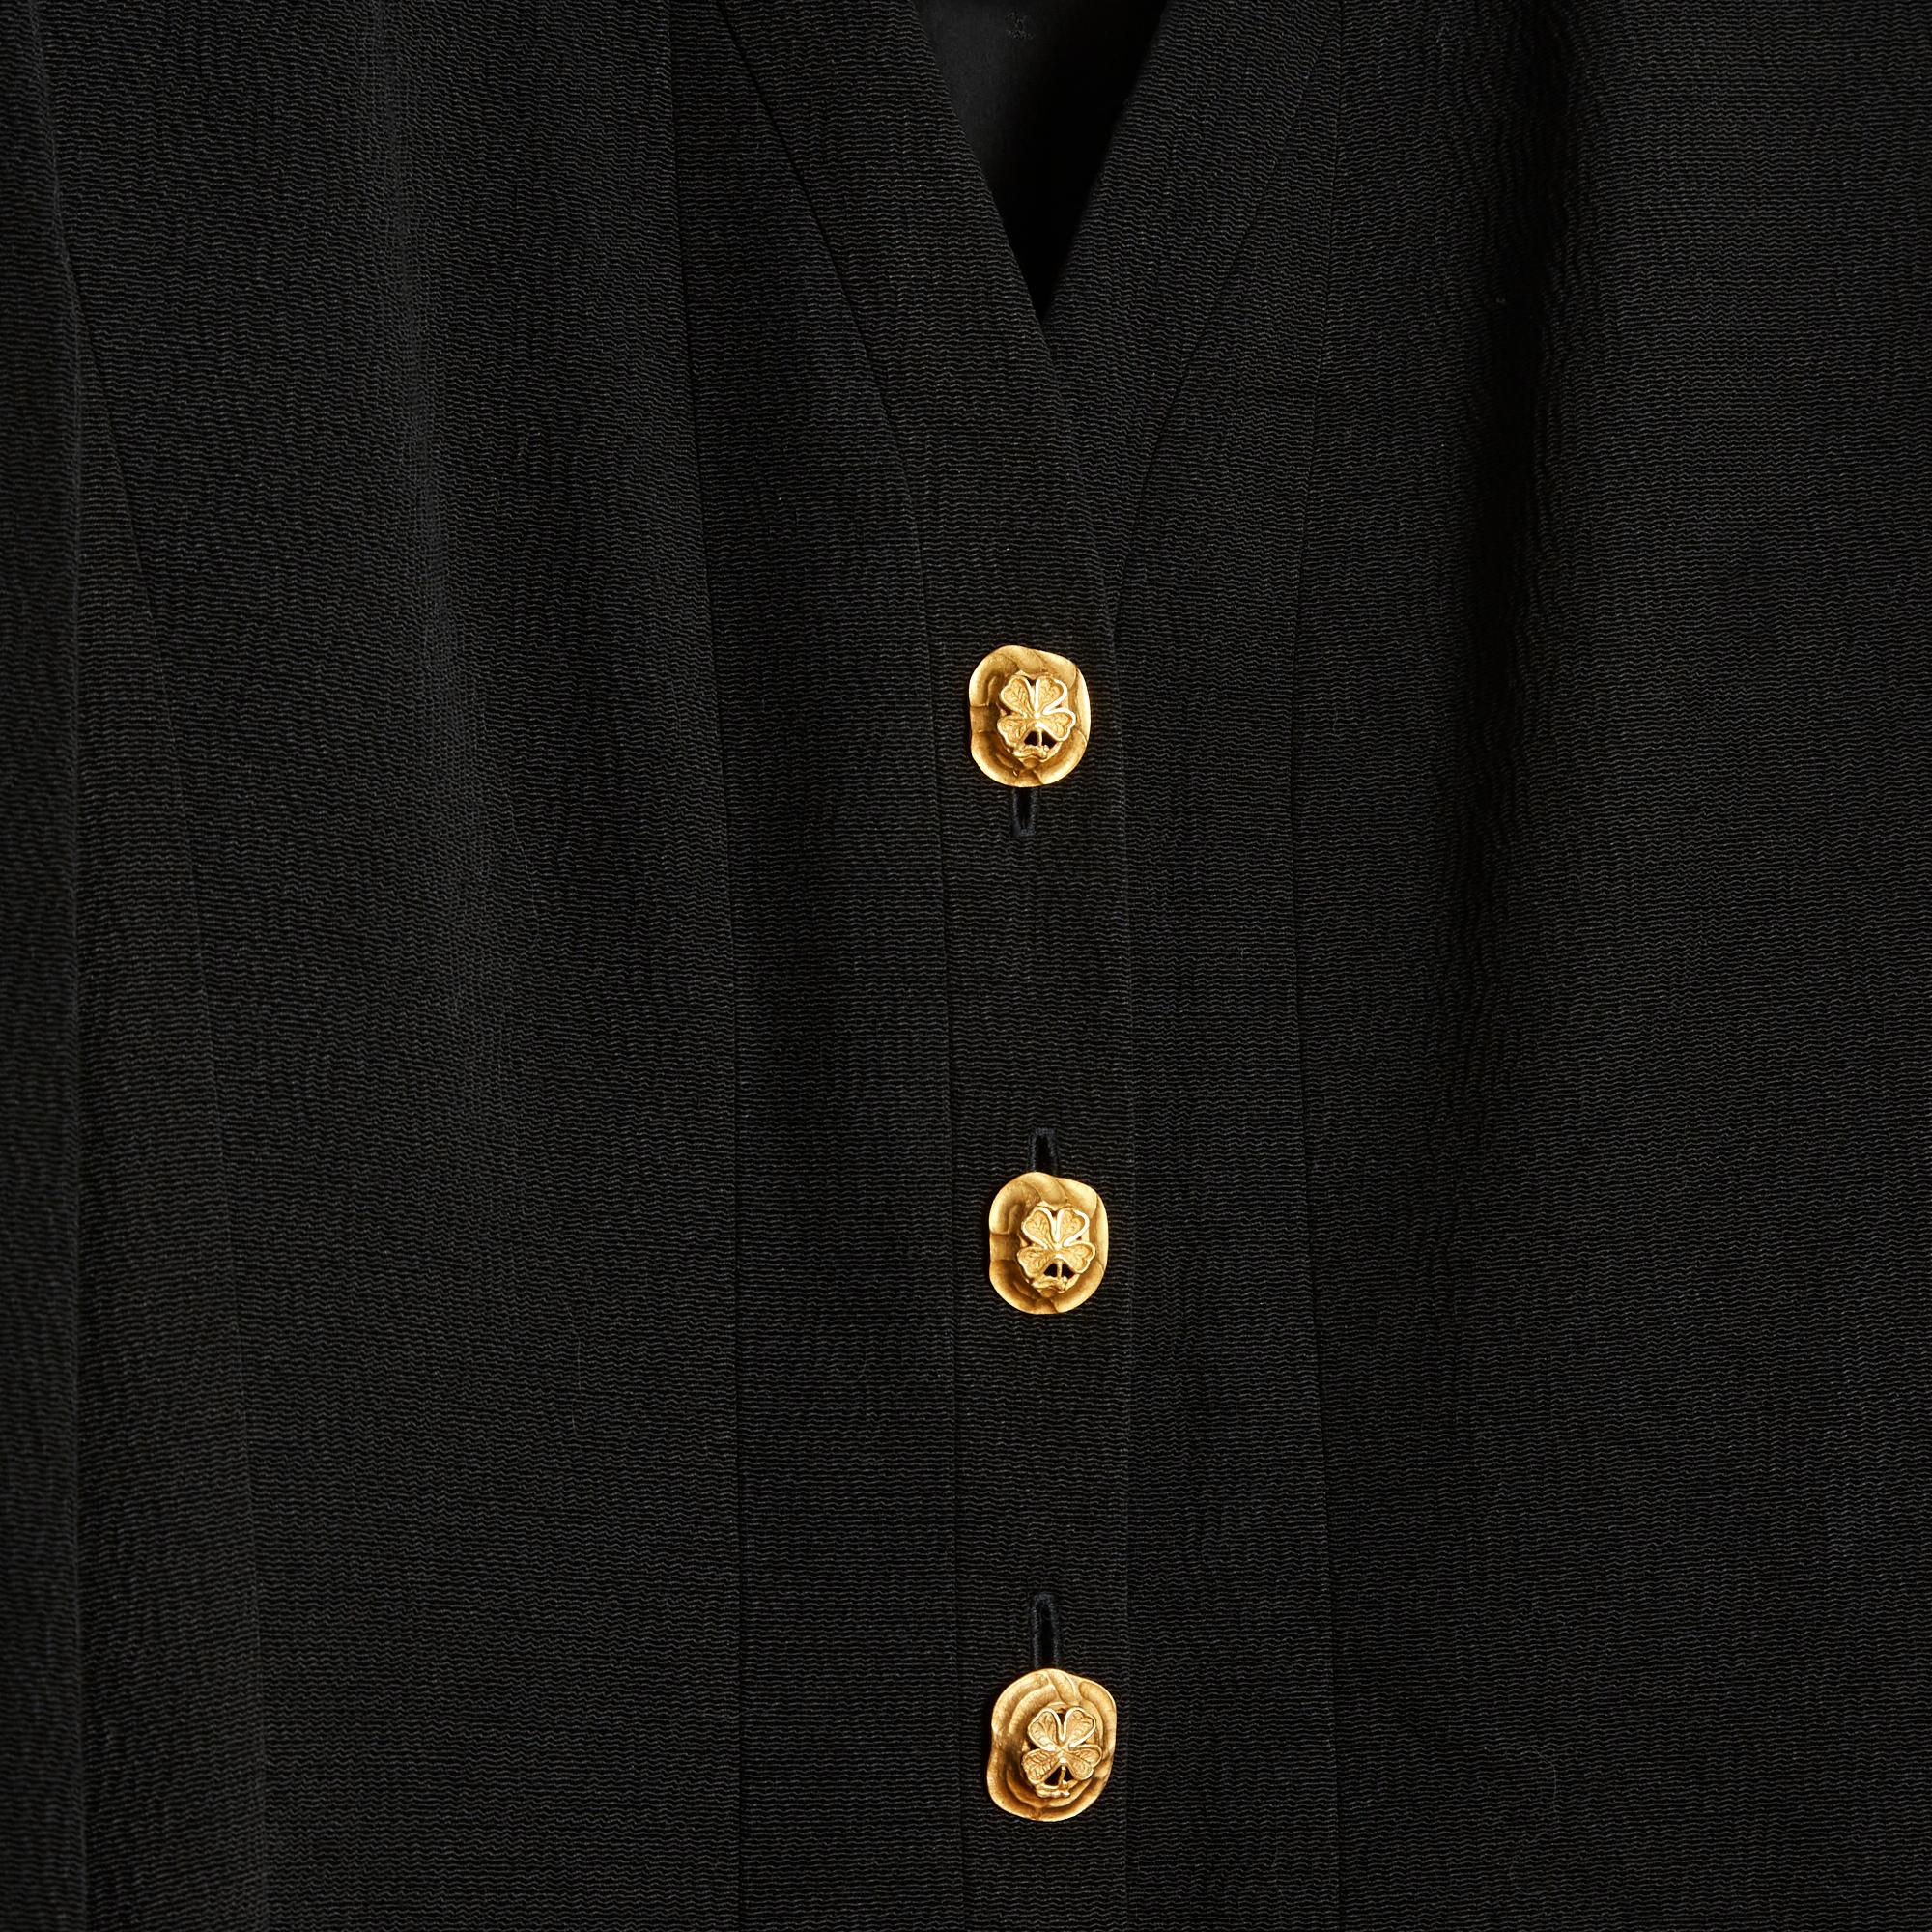 Women's or Men's SS 1993 Chanel black crepe blazer FR42